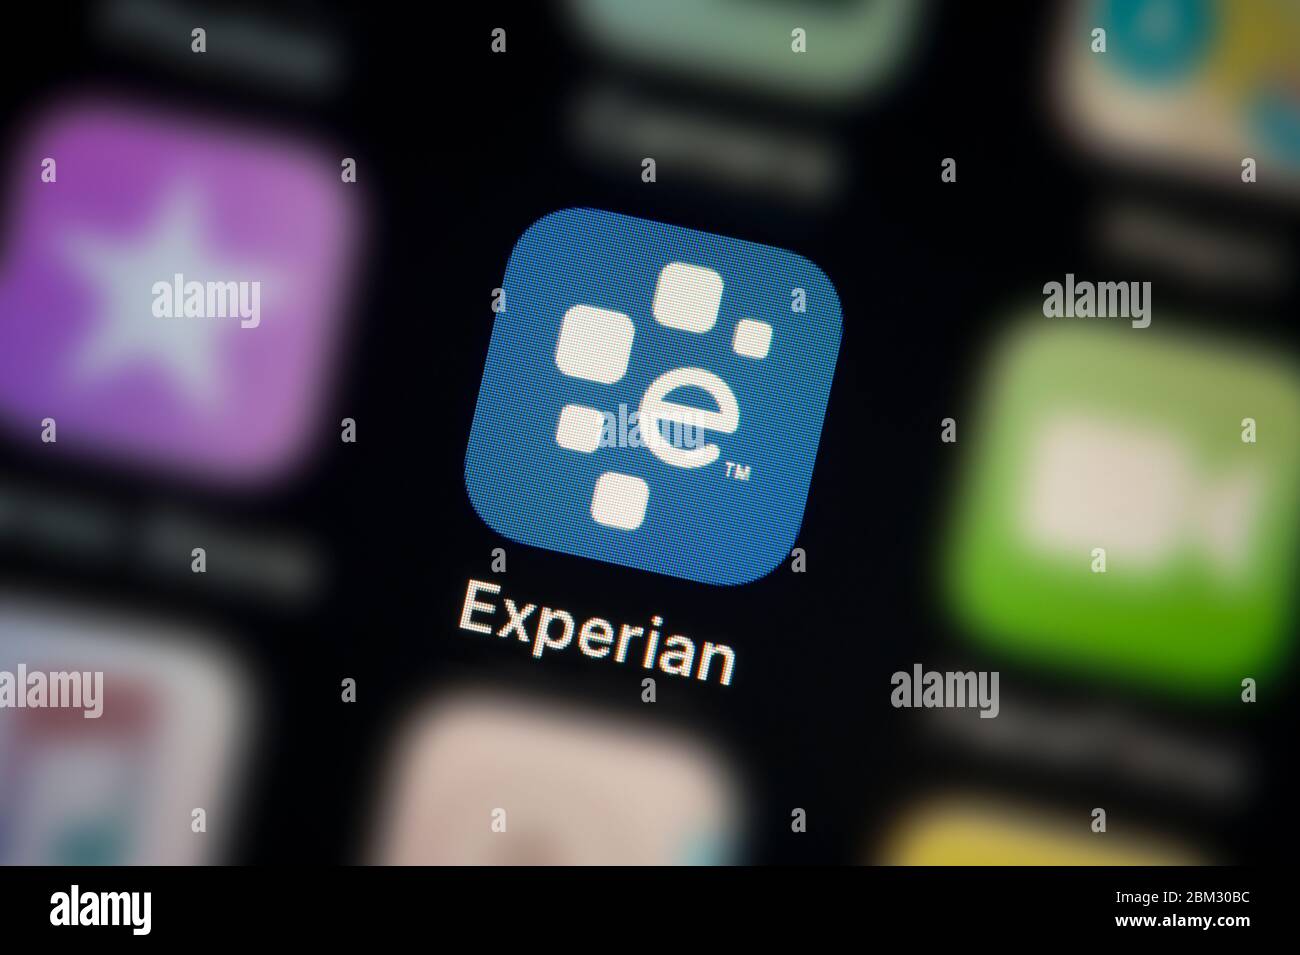 Gros plan de l'icône de l'application Experian, comme illustré sur l'écran d'un smartphone (usage éditorial uniquement) Banque D'Images